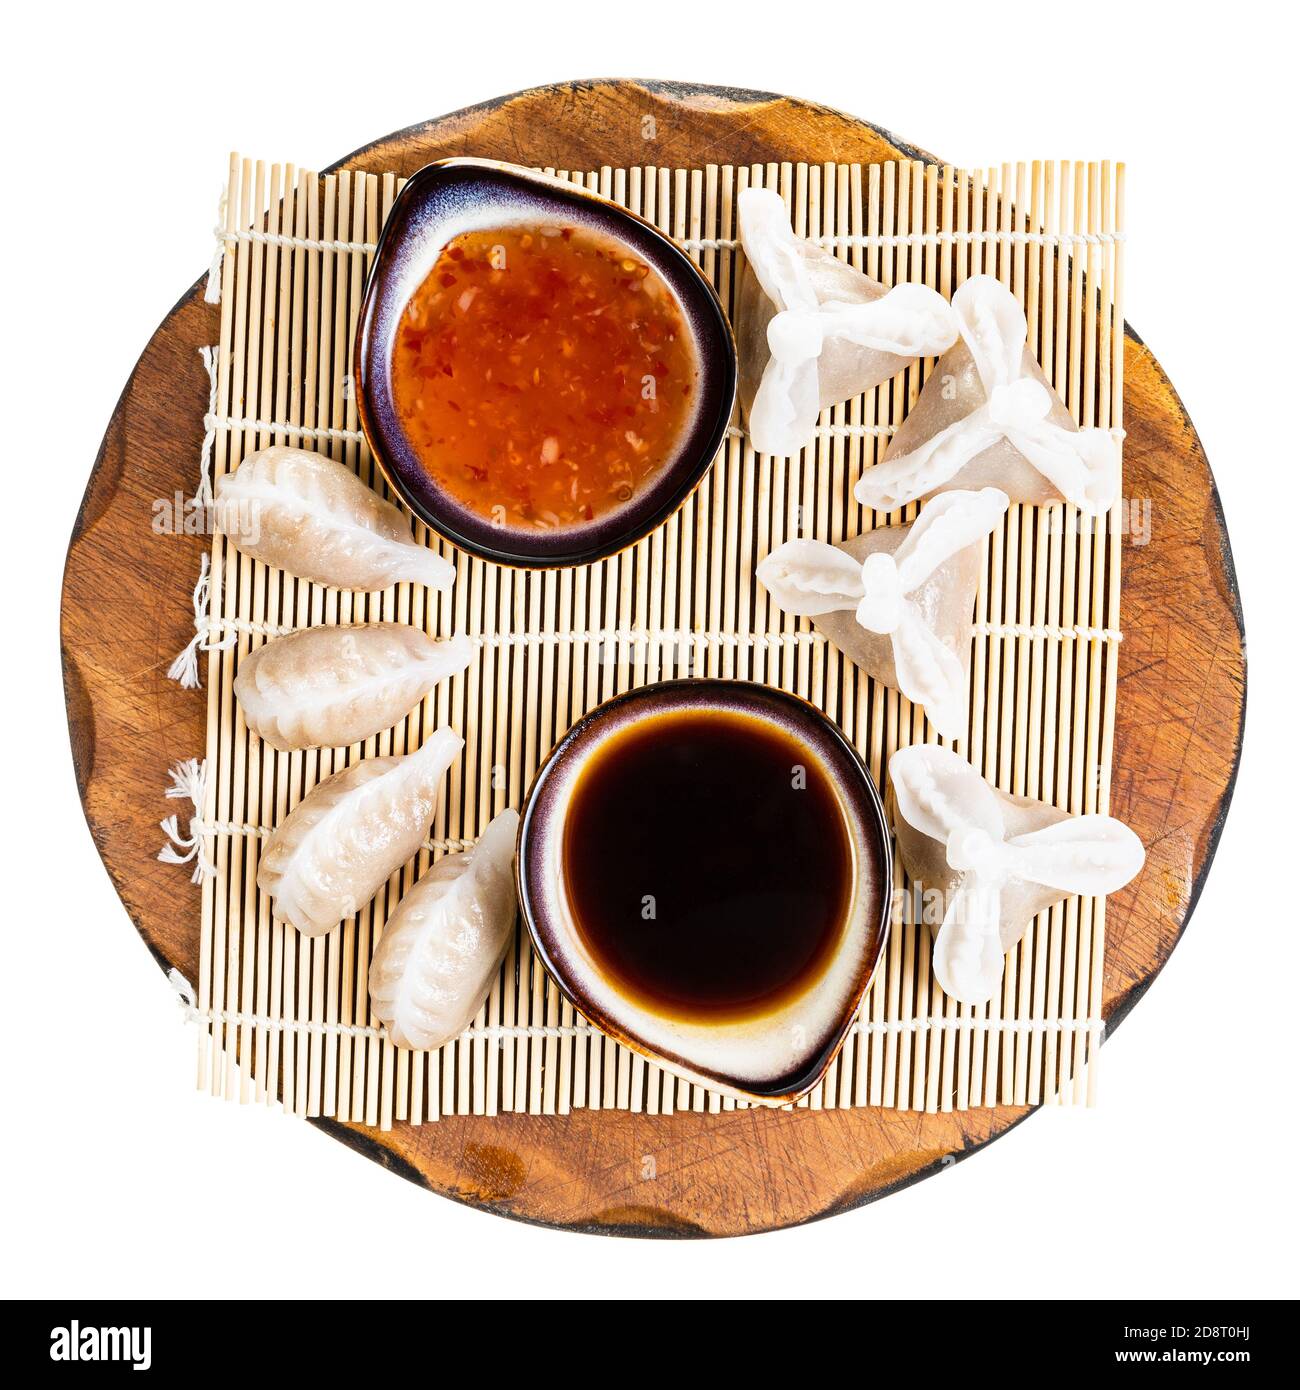 Cucina cinese - vista dall'alto di varie Dim Sum e. suse su tavola di legno isolato su sfondo bianco Foto Stock